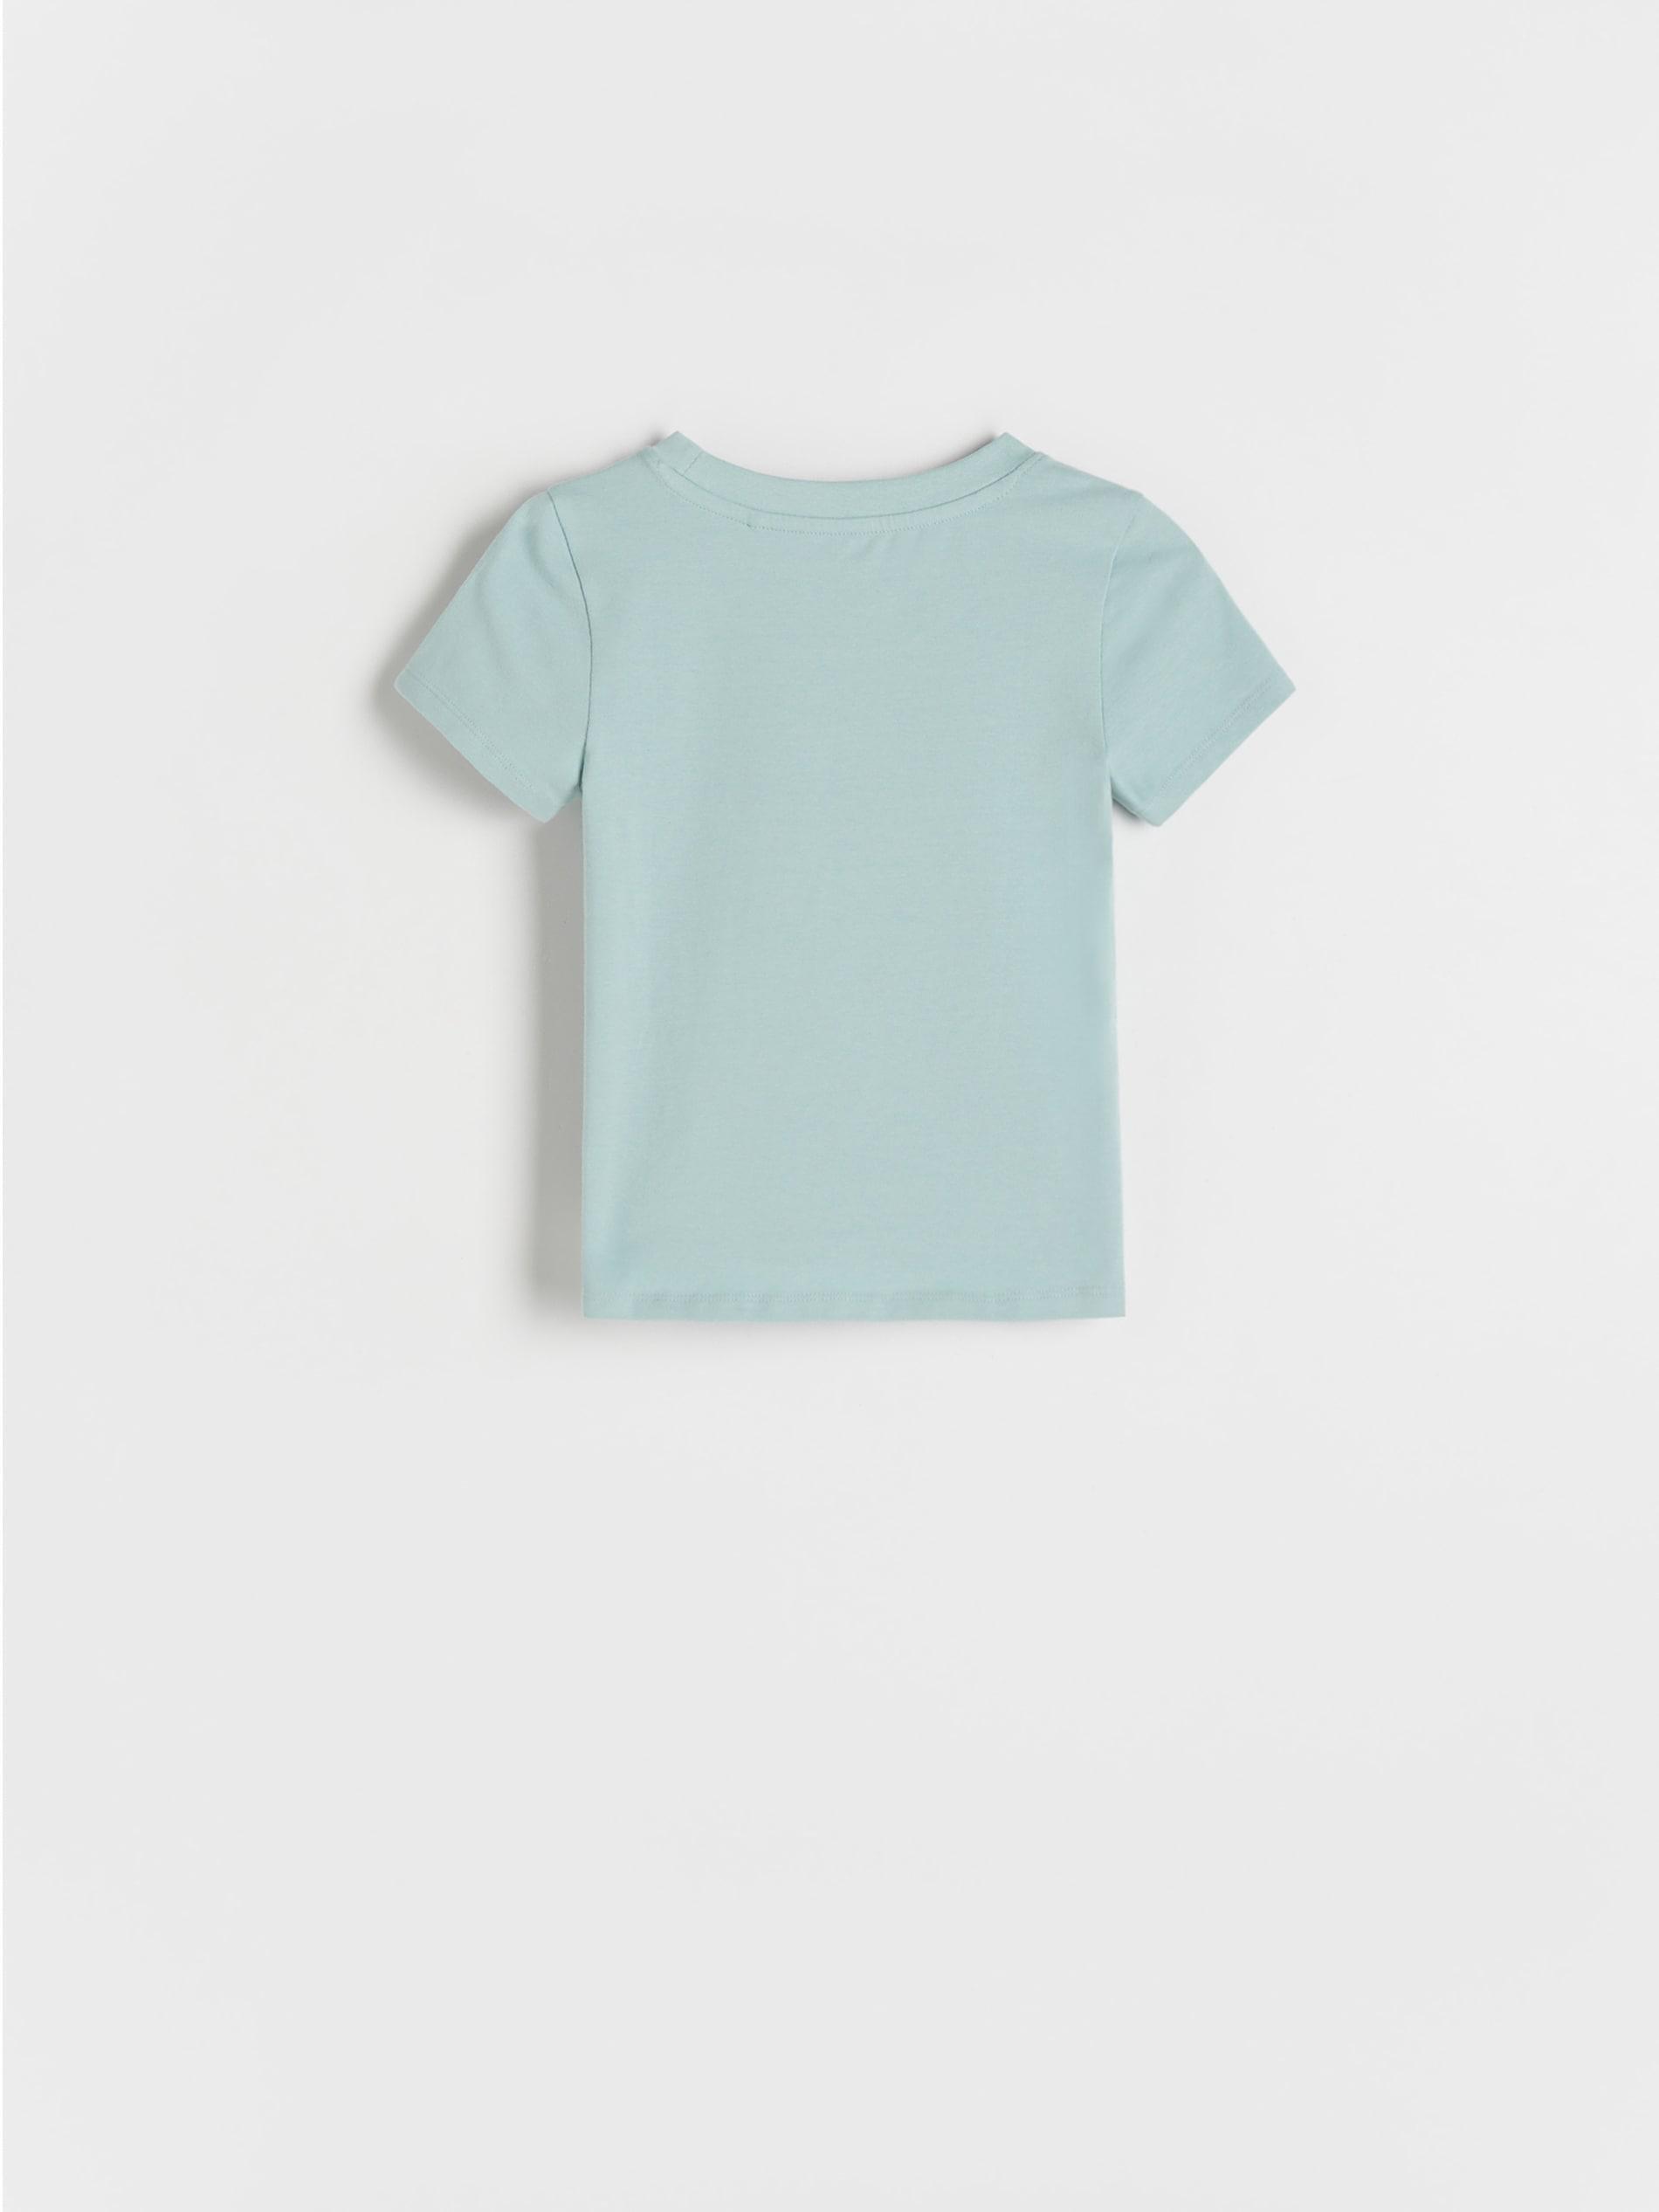 Reserved - Green Cotton Rich T-Shirt, Kids Girls